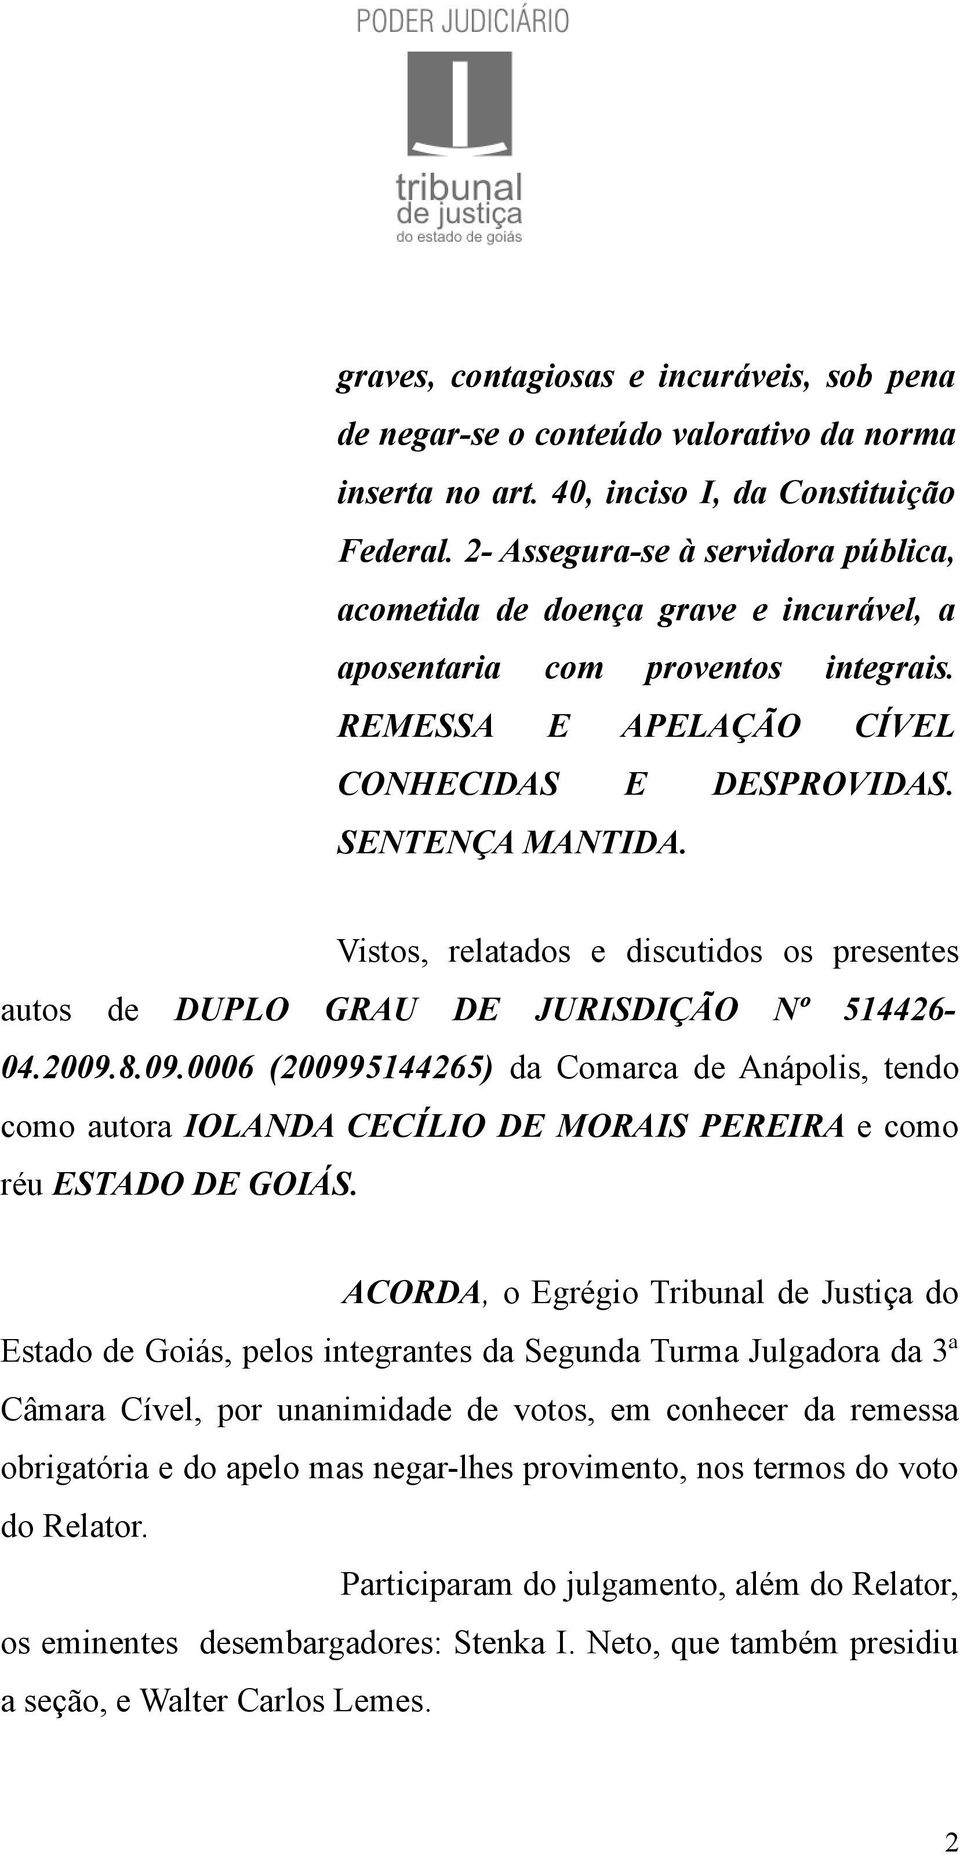 Vistos, relatados e discutidos os presentes autos de DUPLO GRAU DE JURISDIÇÃO Nº 514426-04.2009.